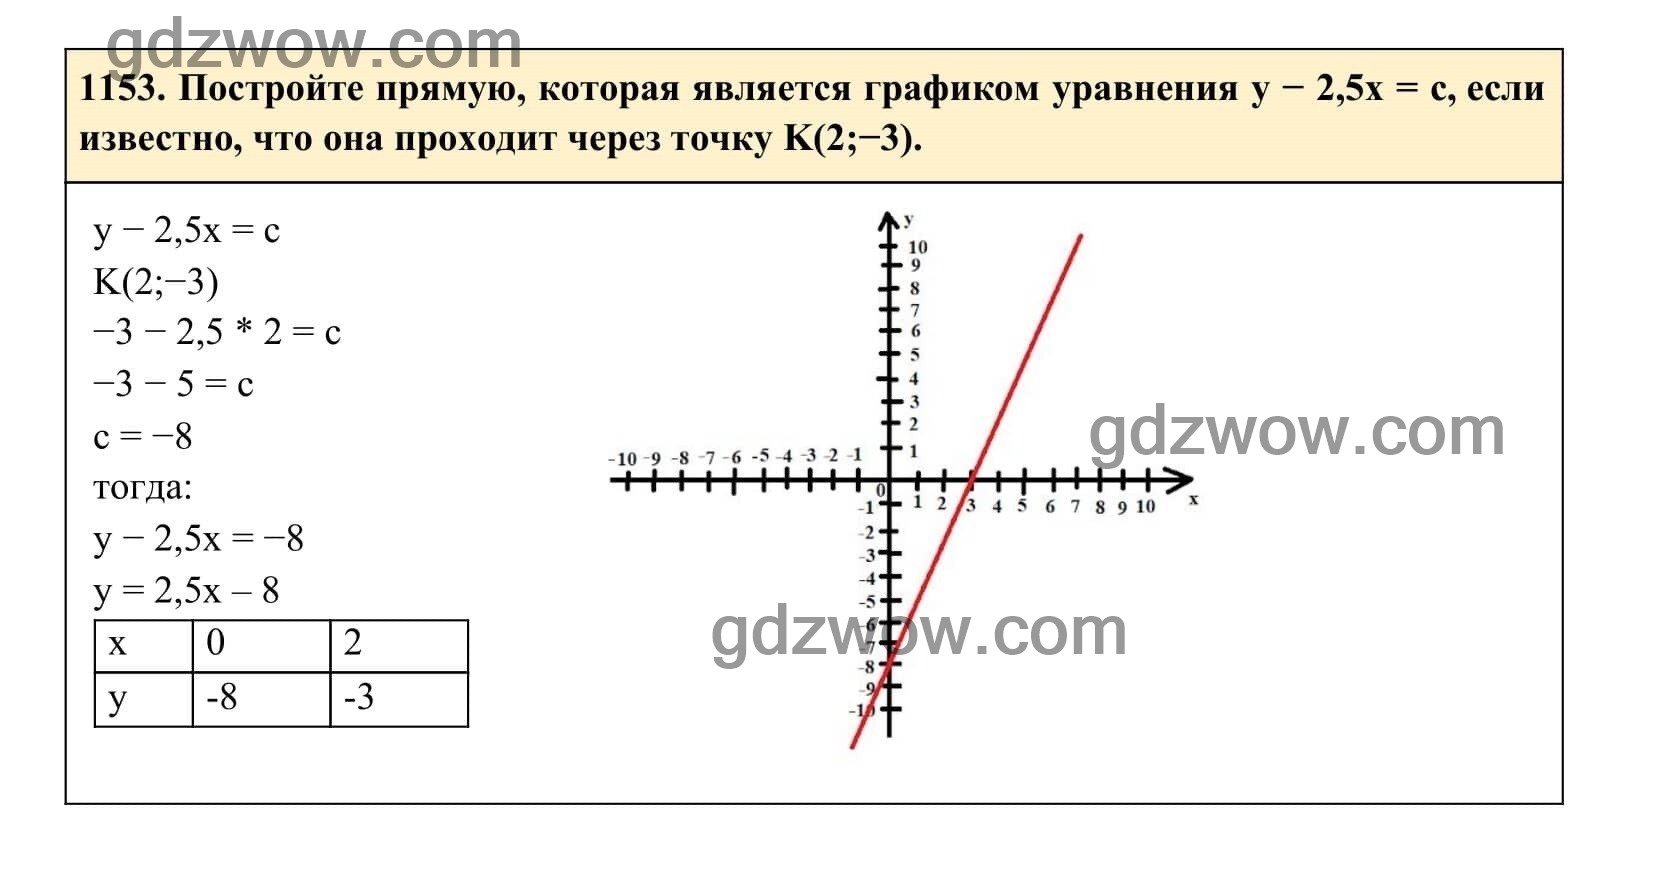 Упражнение 1153 - ГДЗ по Алгебре 7 класс Учебник Макарычев (решебник) - GDZwow